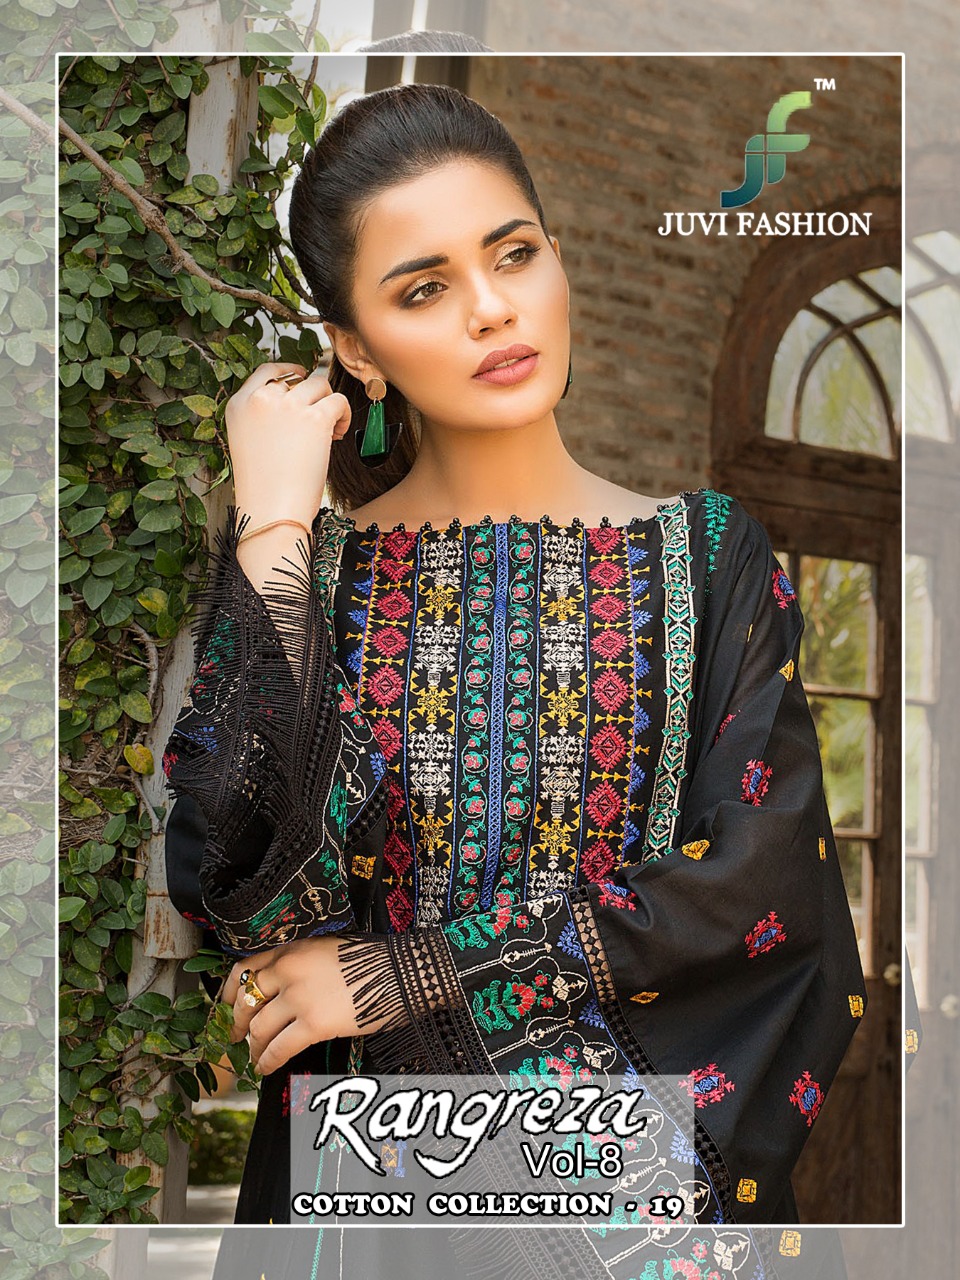 Rangreza Vol-18 Juvi Fashion Cotton Collection-19 Pakistani Cotton Suits Collection Wholesale Surat